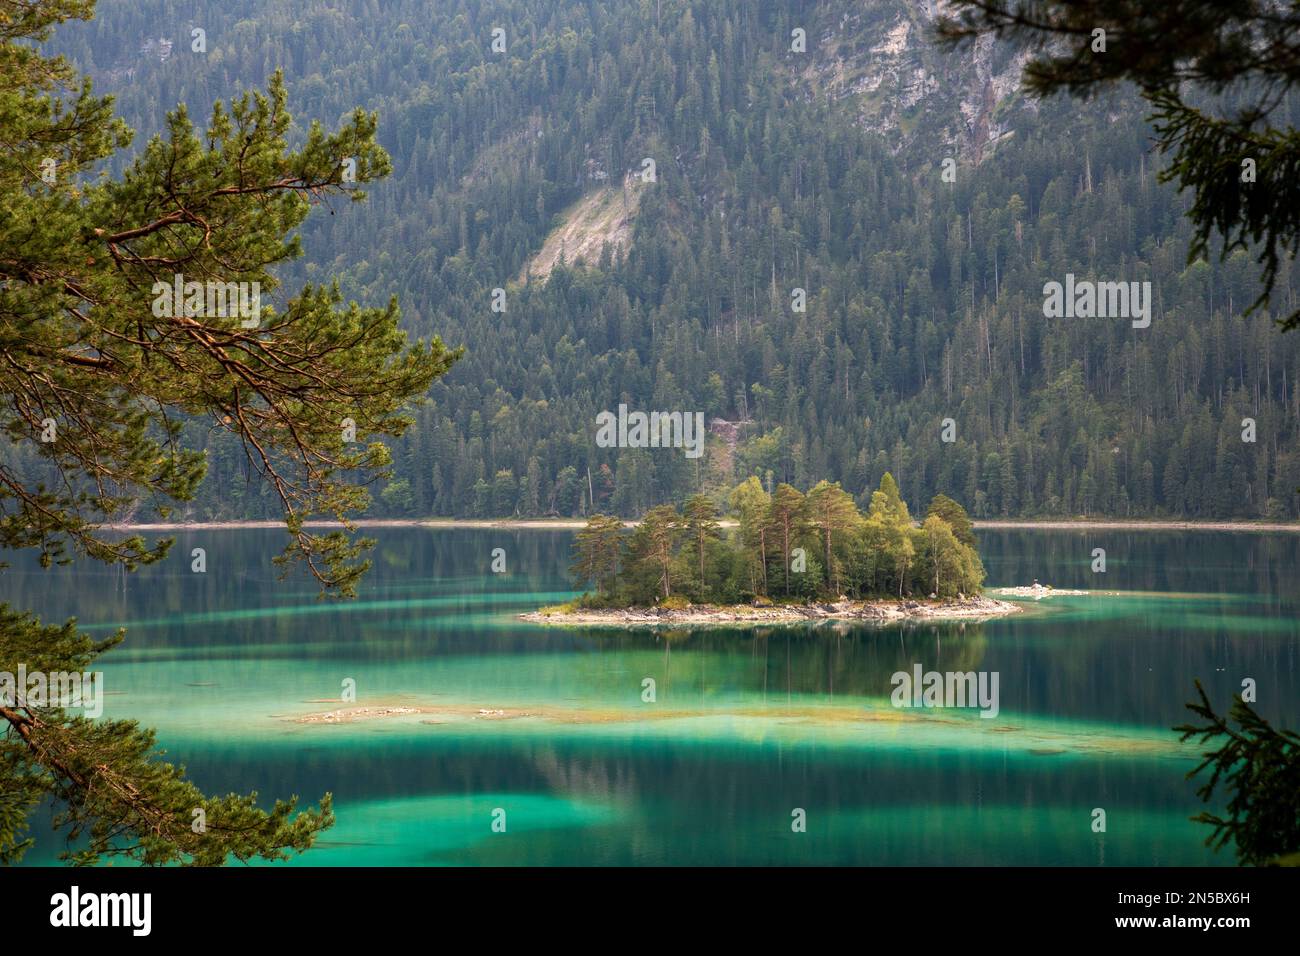 lago Eibsee con pequeñas islas en el agua turquesa, Alemania, Baviera, Grainau Foto de stock